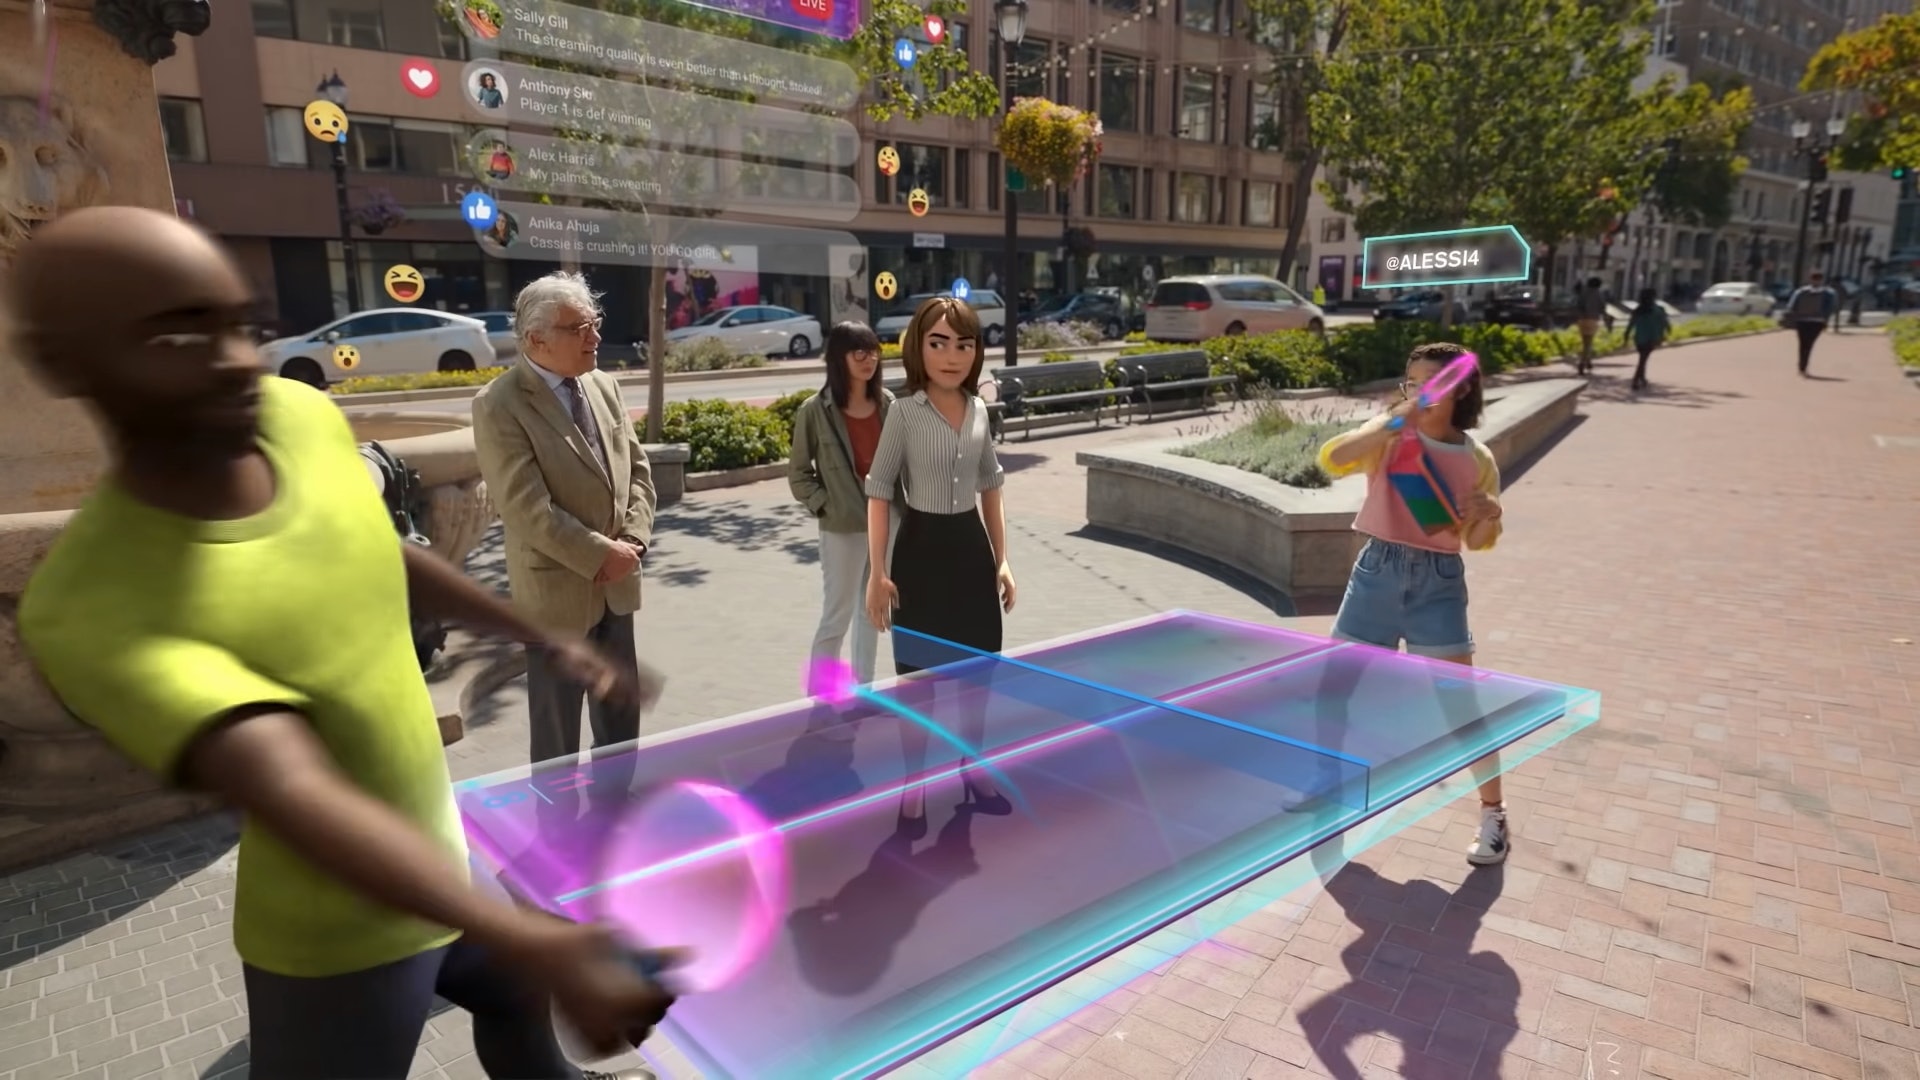 图片展示几位虚拟角色在城市街道上，一位女性角色走在透明蓝色光带上，周围有其他人物和车辆。